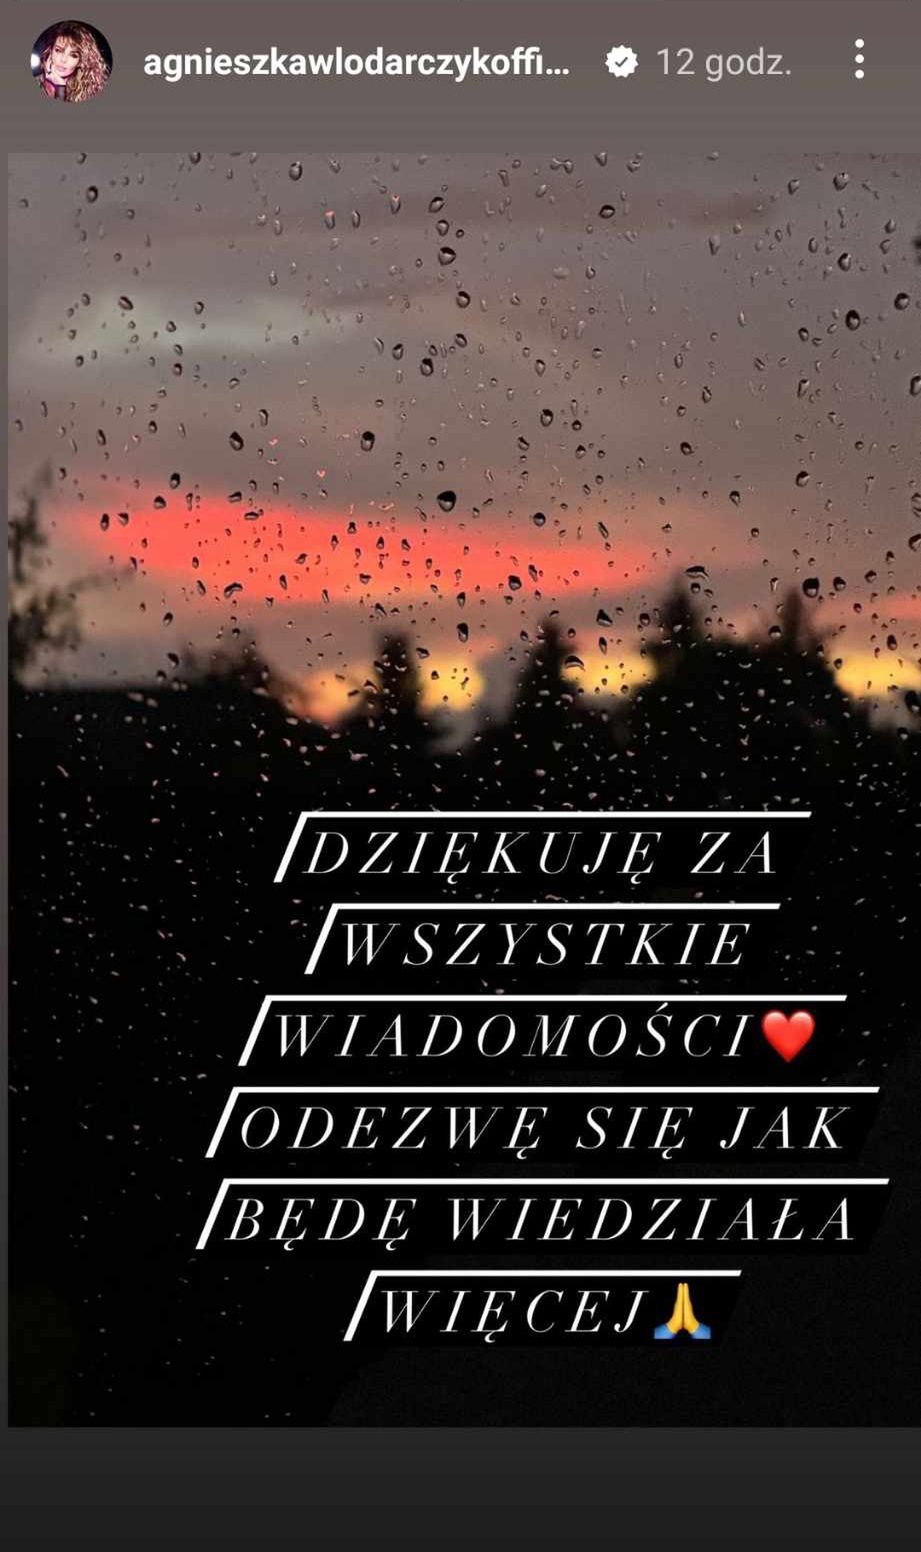 Instagramowa relacja Agnieszki Włodarczyk